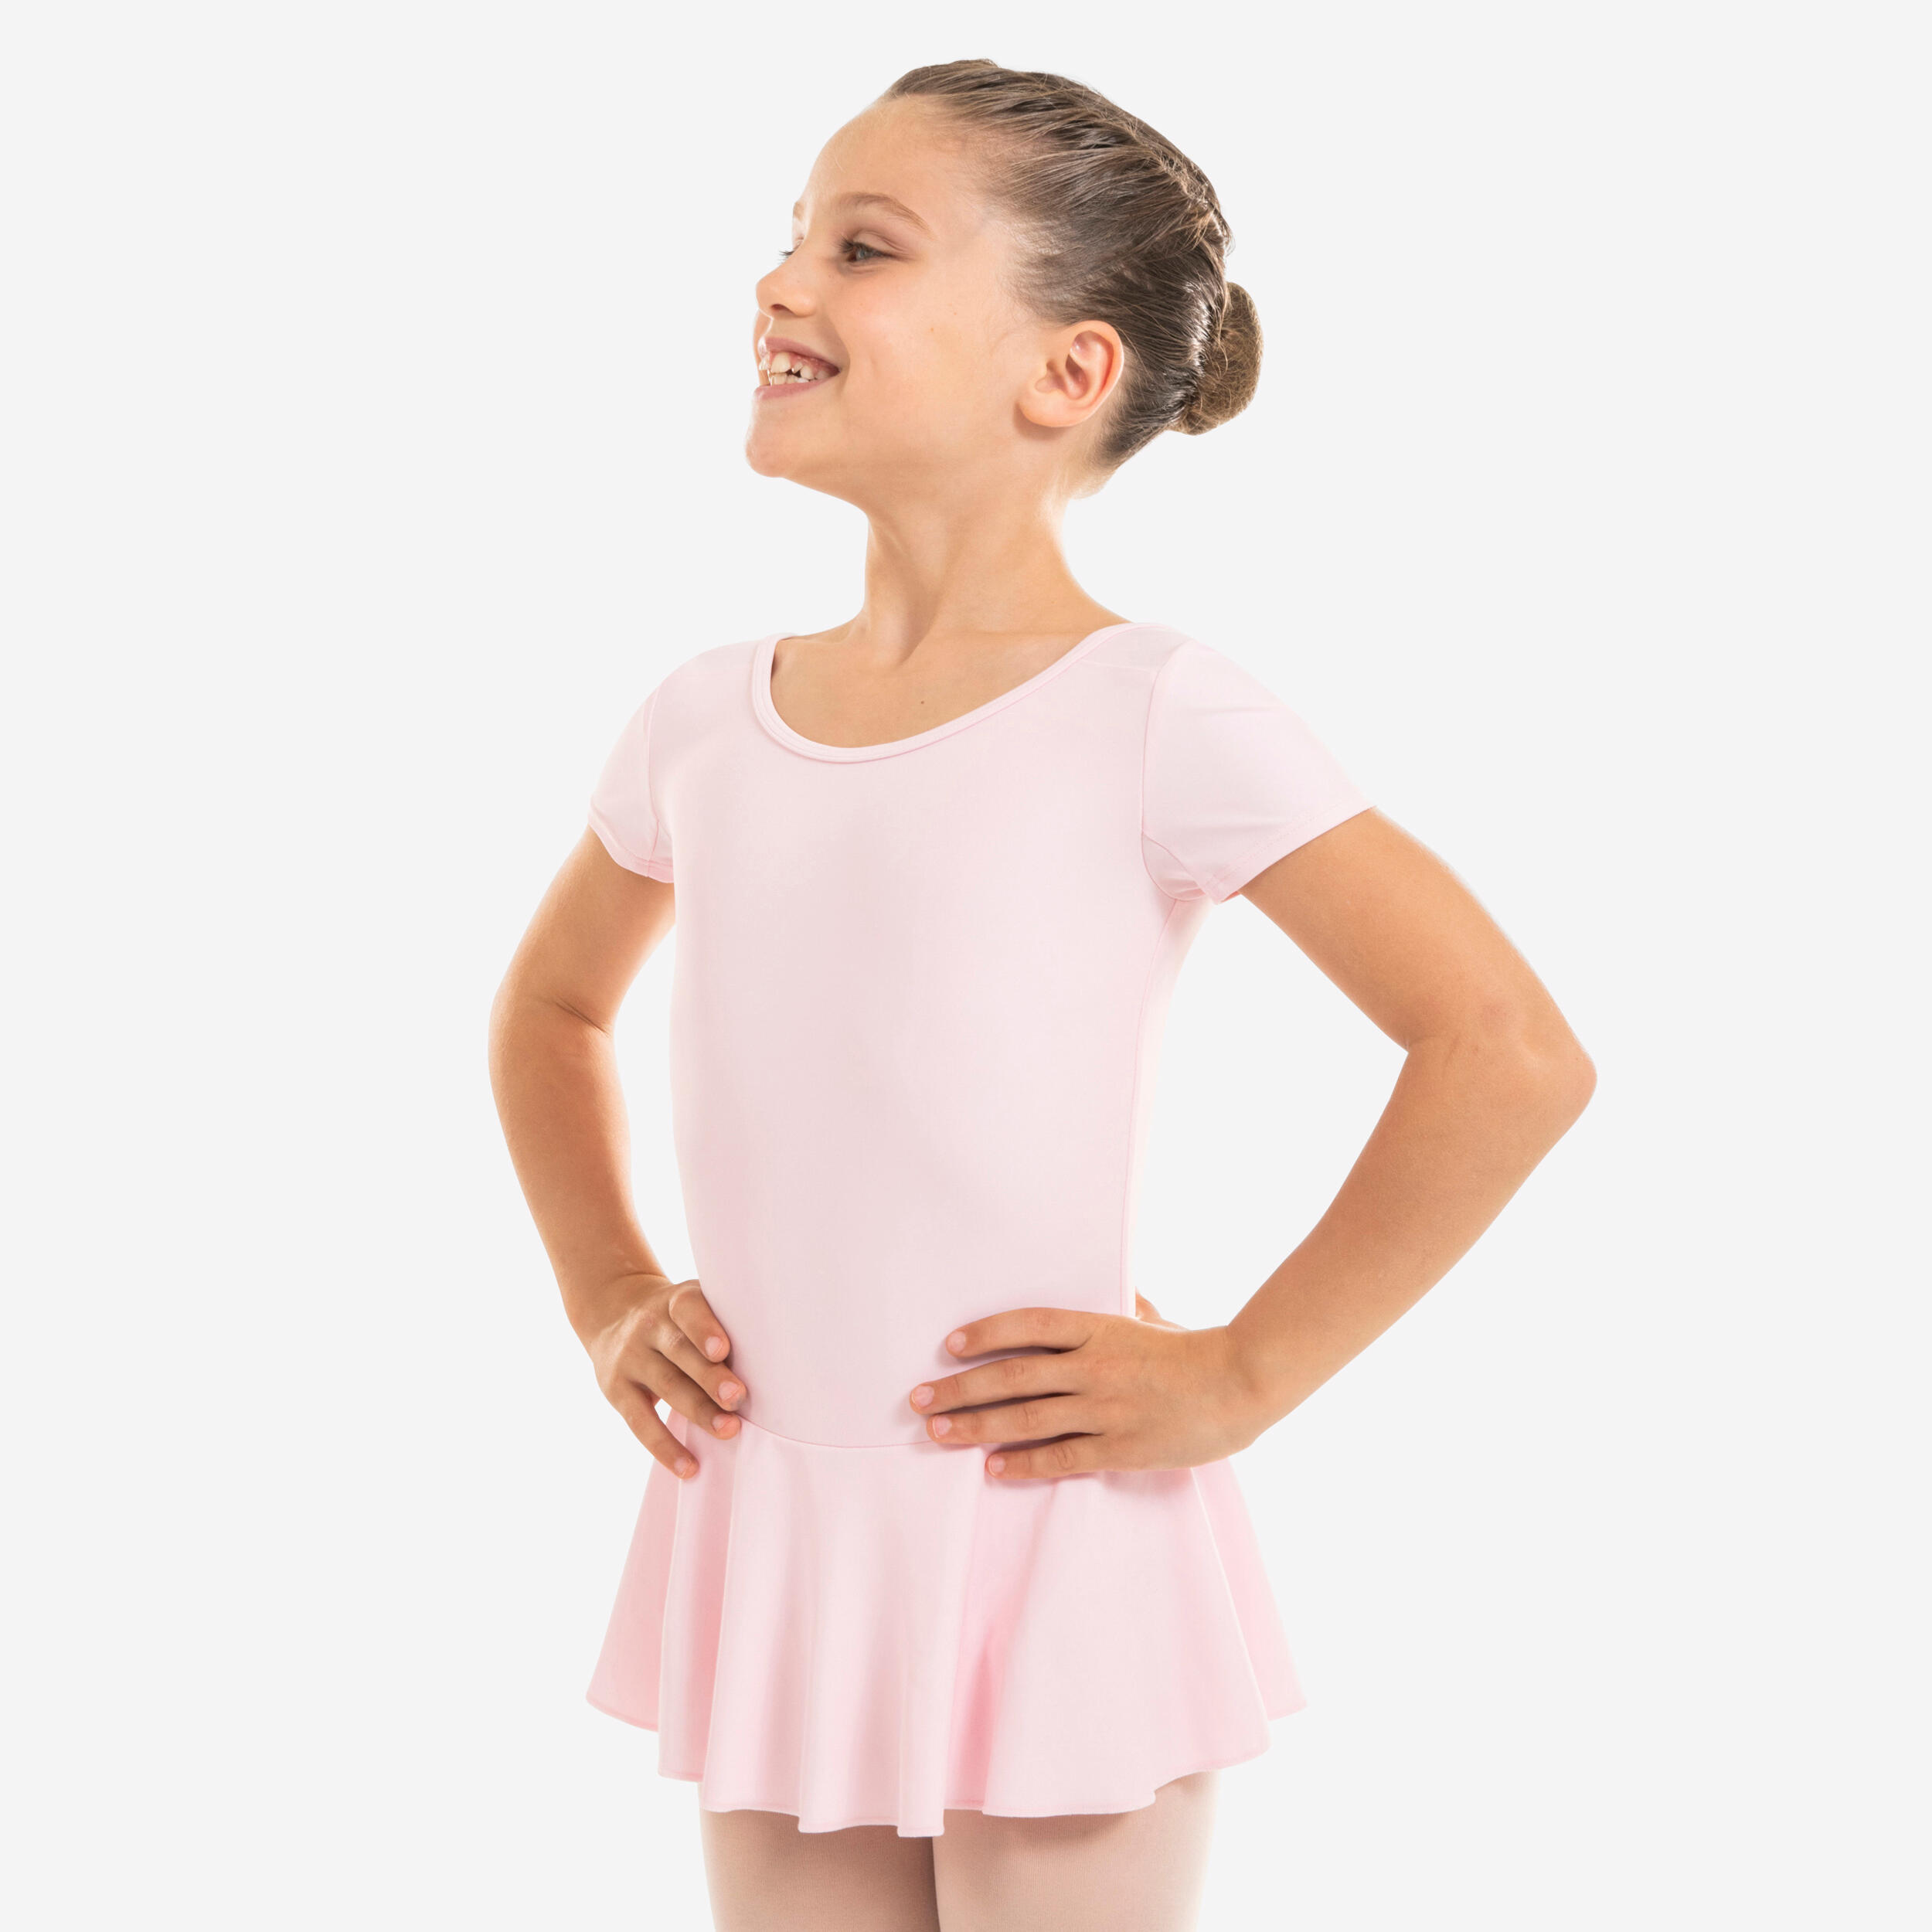 Girls' Ballet Tights - White - Snow white - Starever - Decathlon